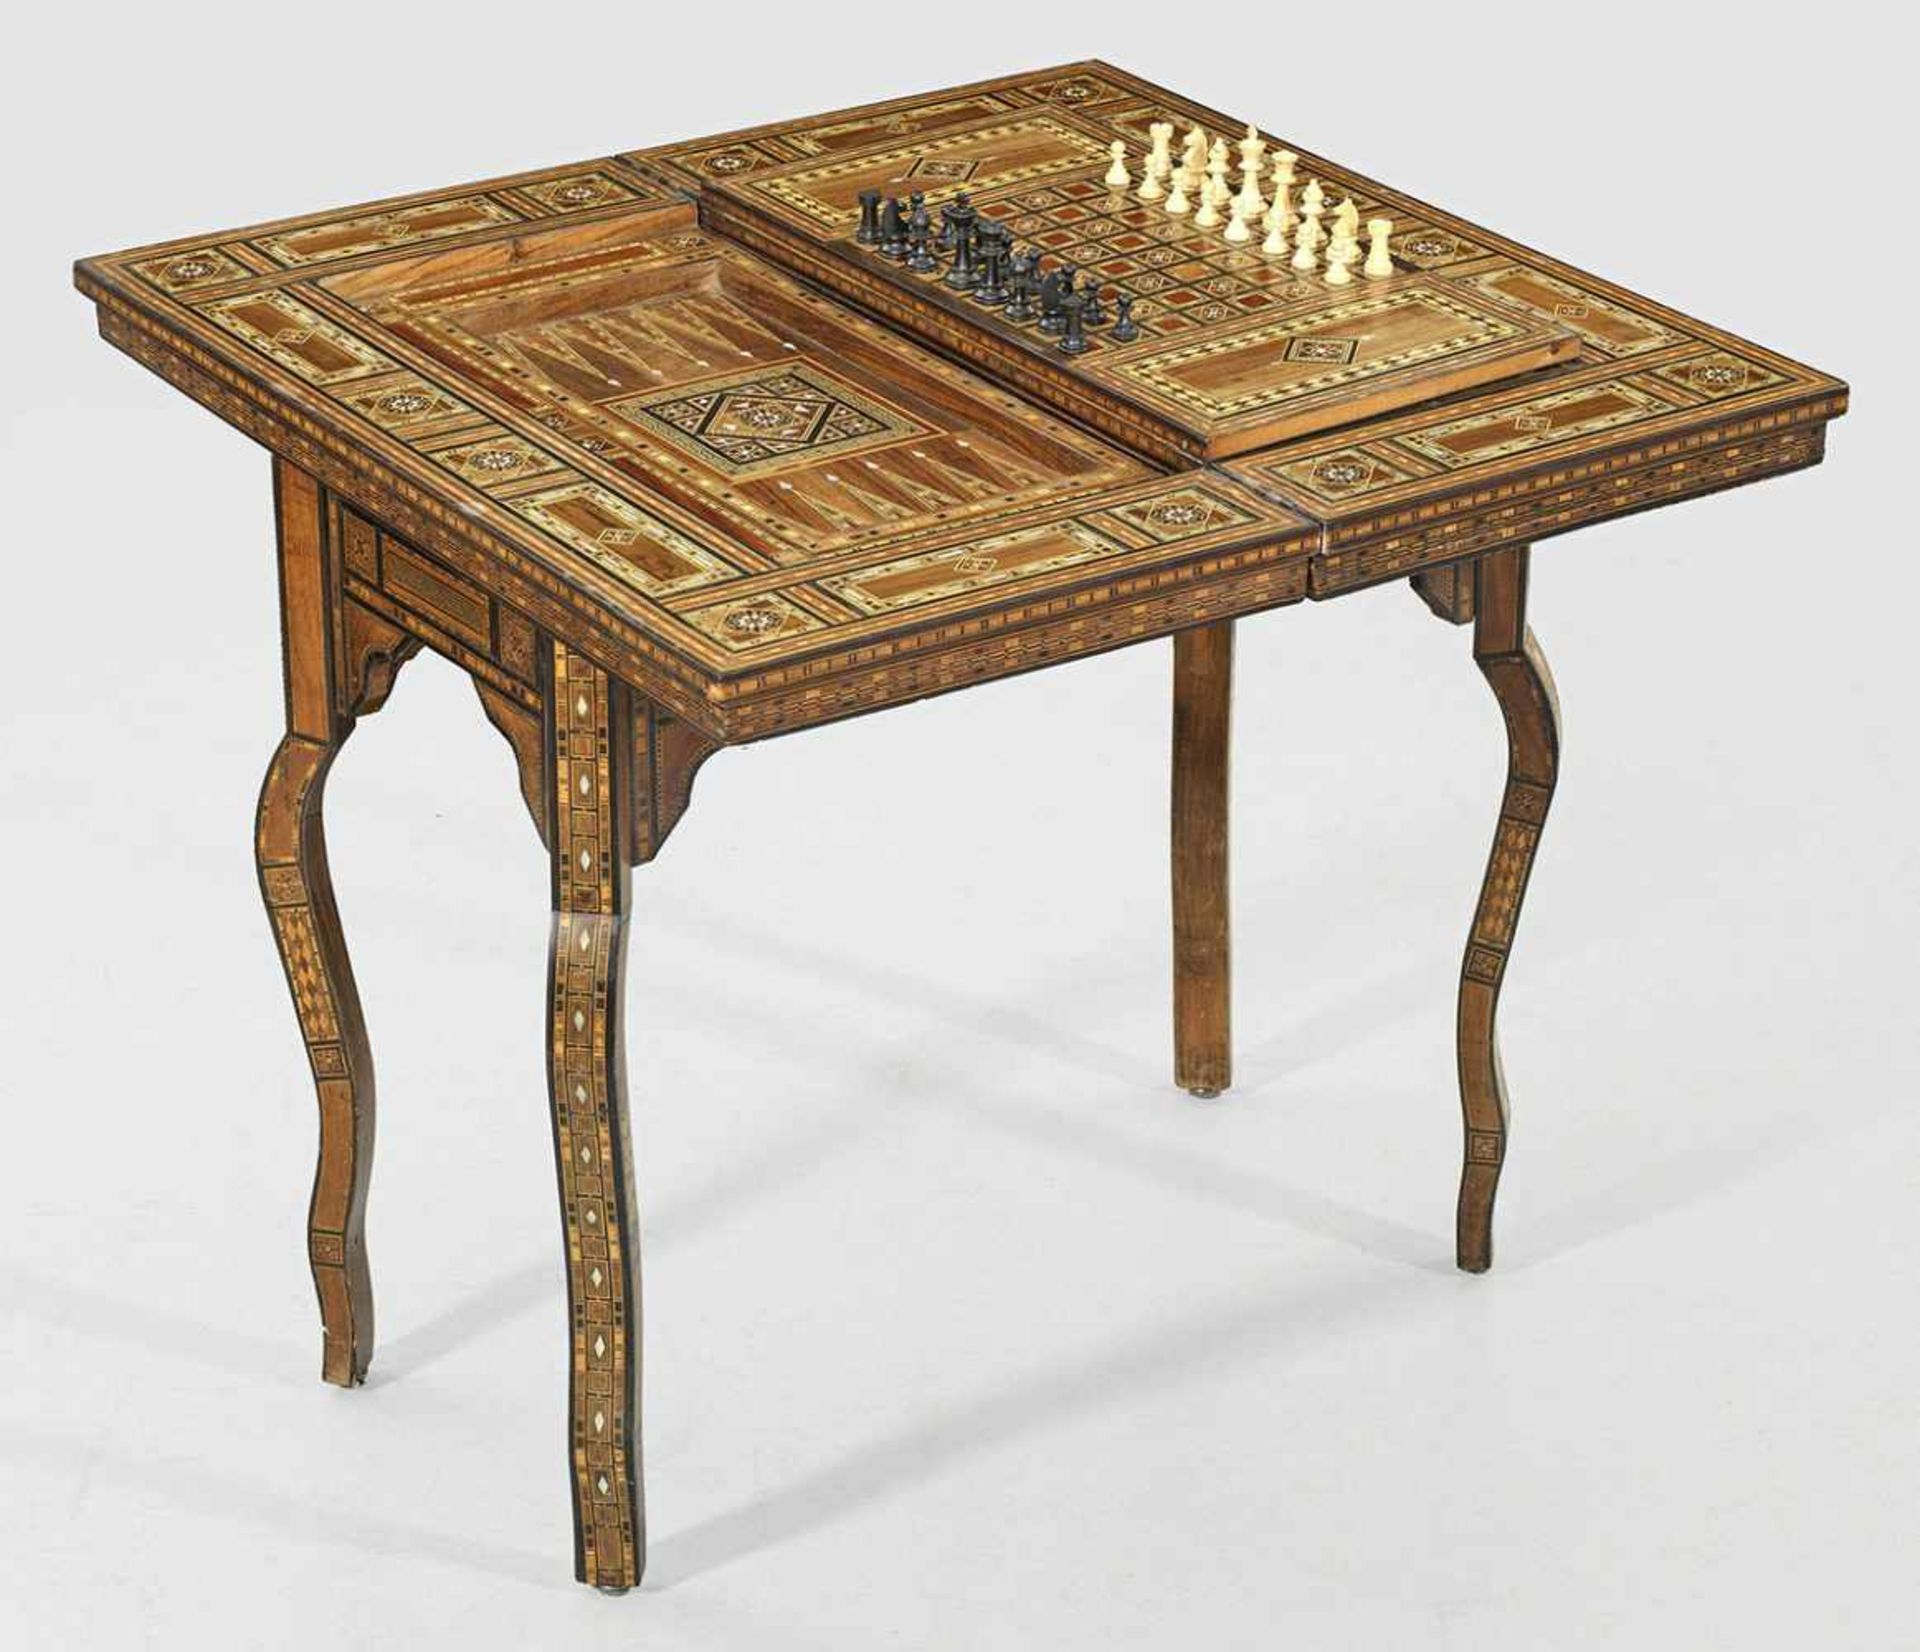 Spieltisch im maurischen StilMahagoni, massiv und furniert sowie reiche Marketterie aus